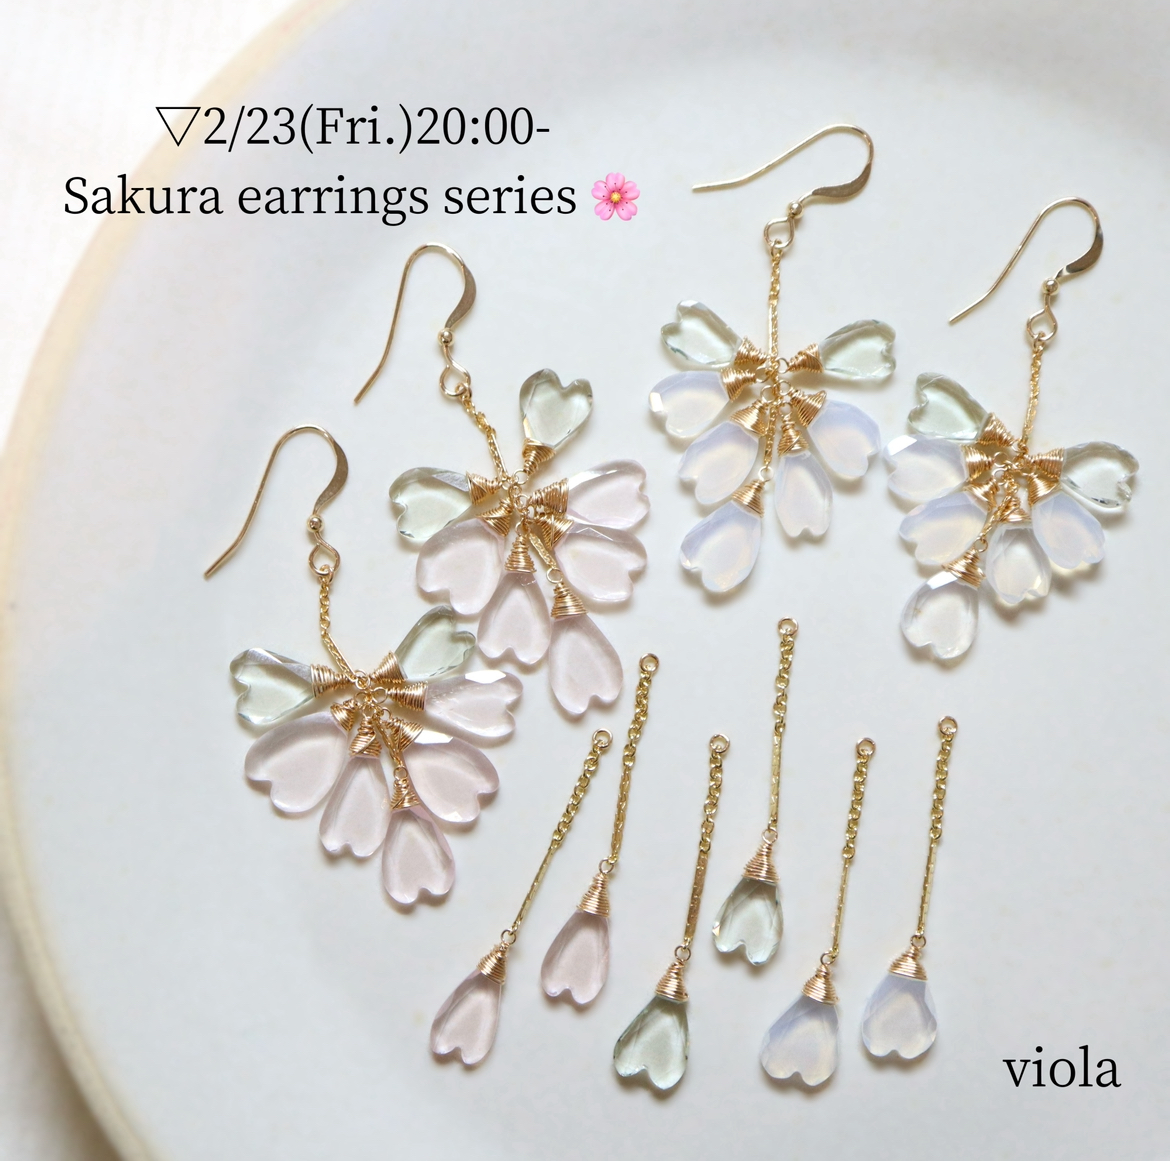 Sakura earrings series start🌸